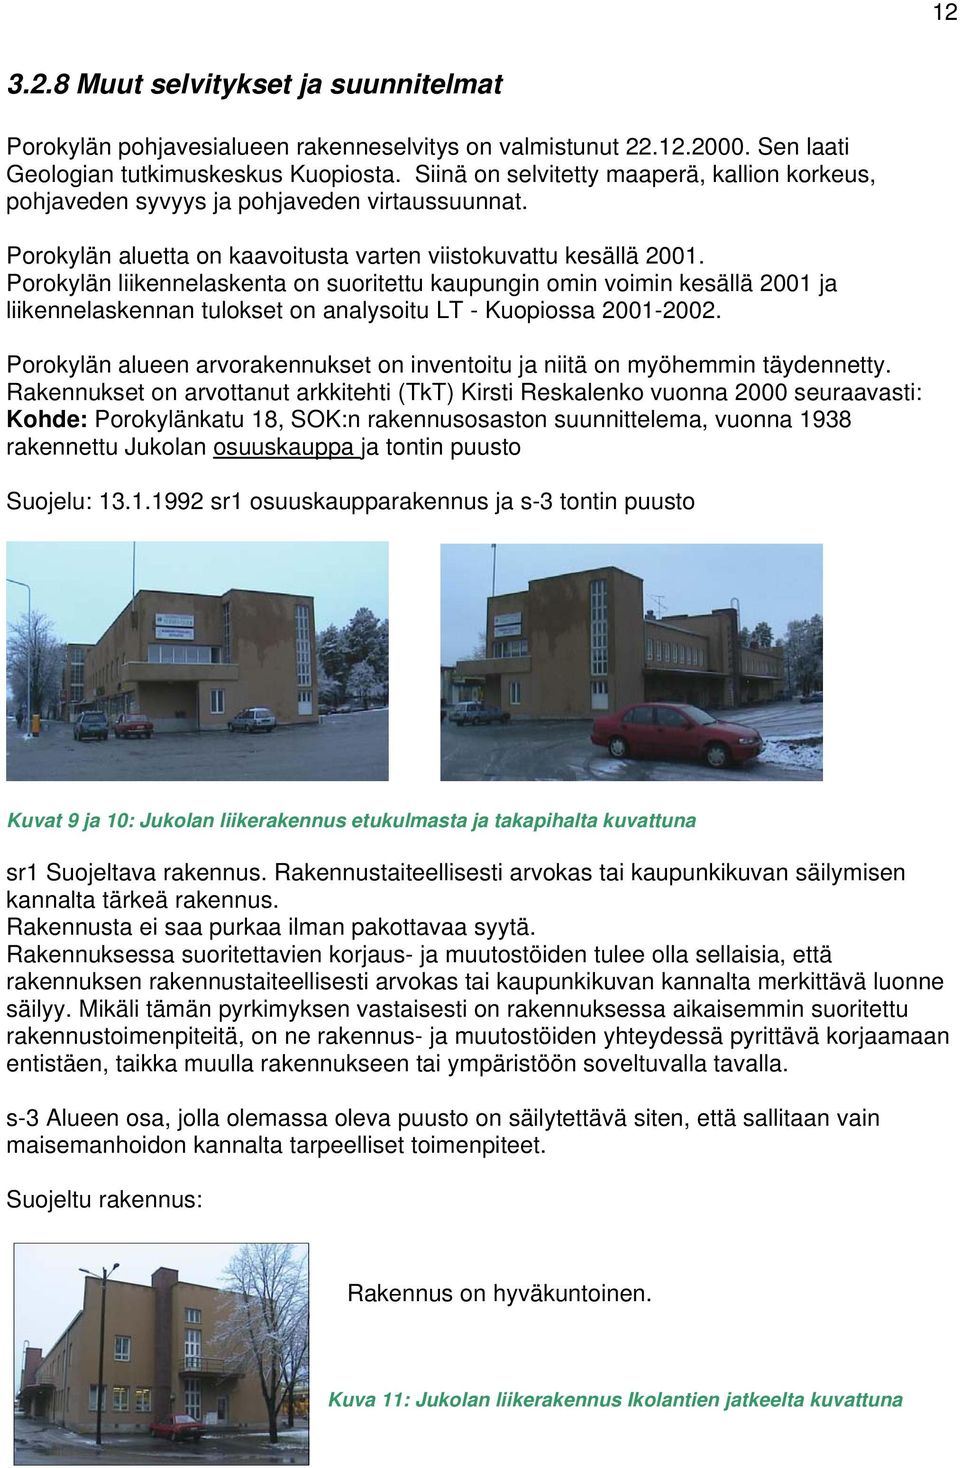 Porokylän liikennelaskenta on suoritettu kaupungin omin voimin kesällä 2001 ja liikennelaskennan tulokset on analysoitu LT - Kuopiossa 2001-2002.